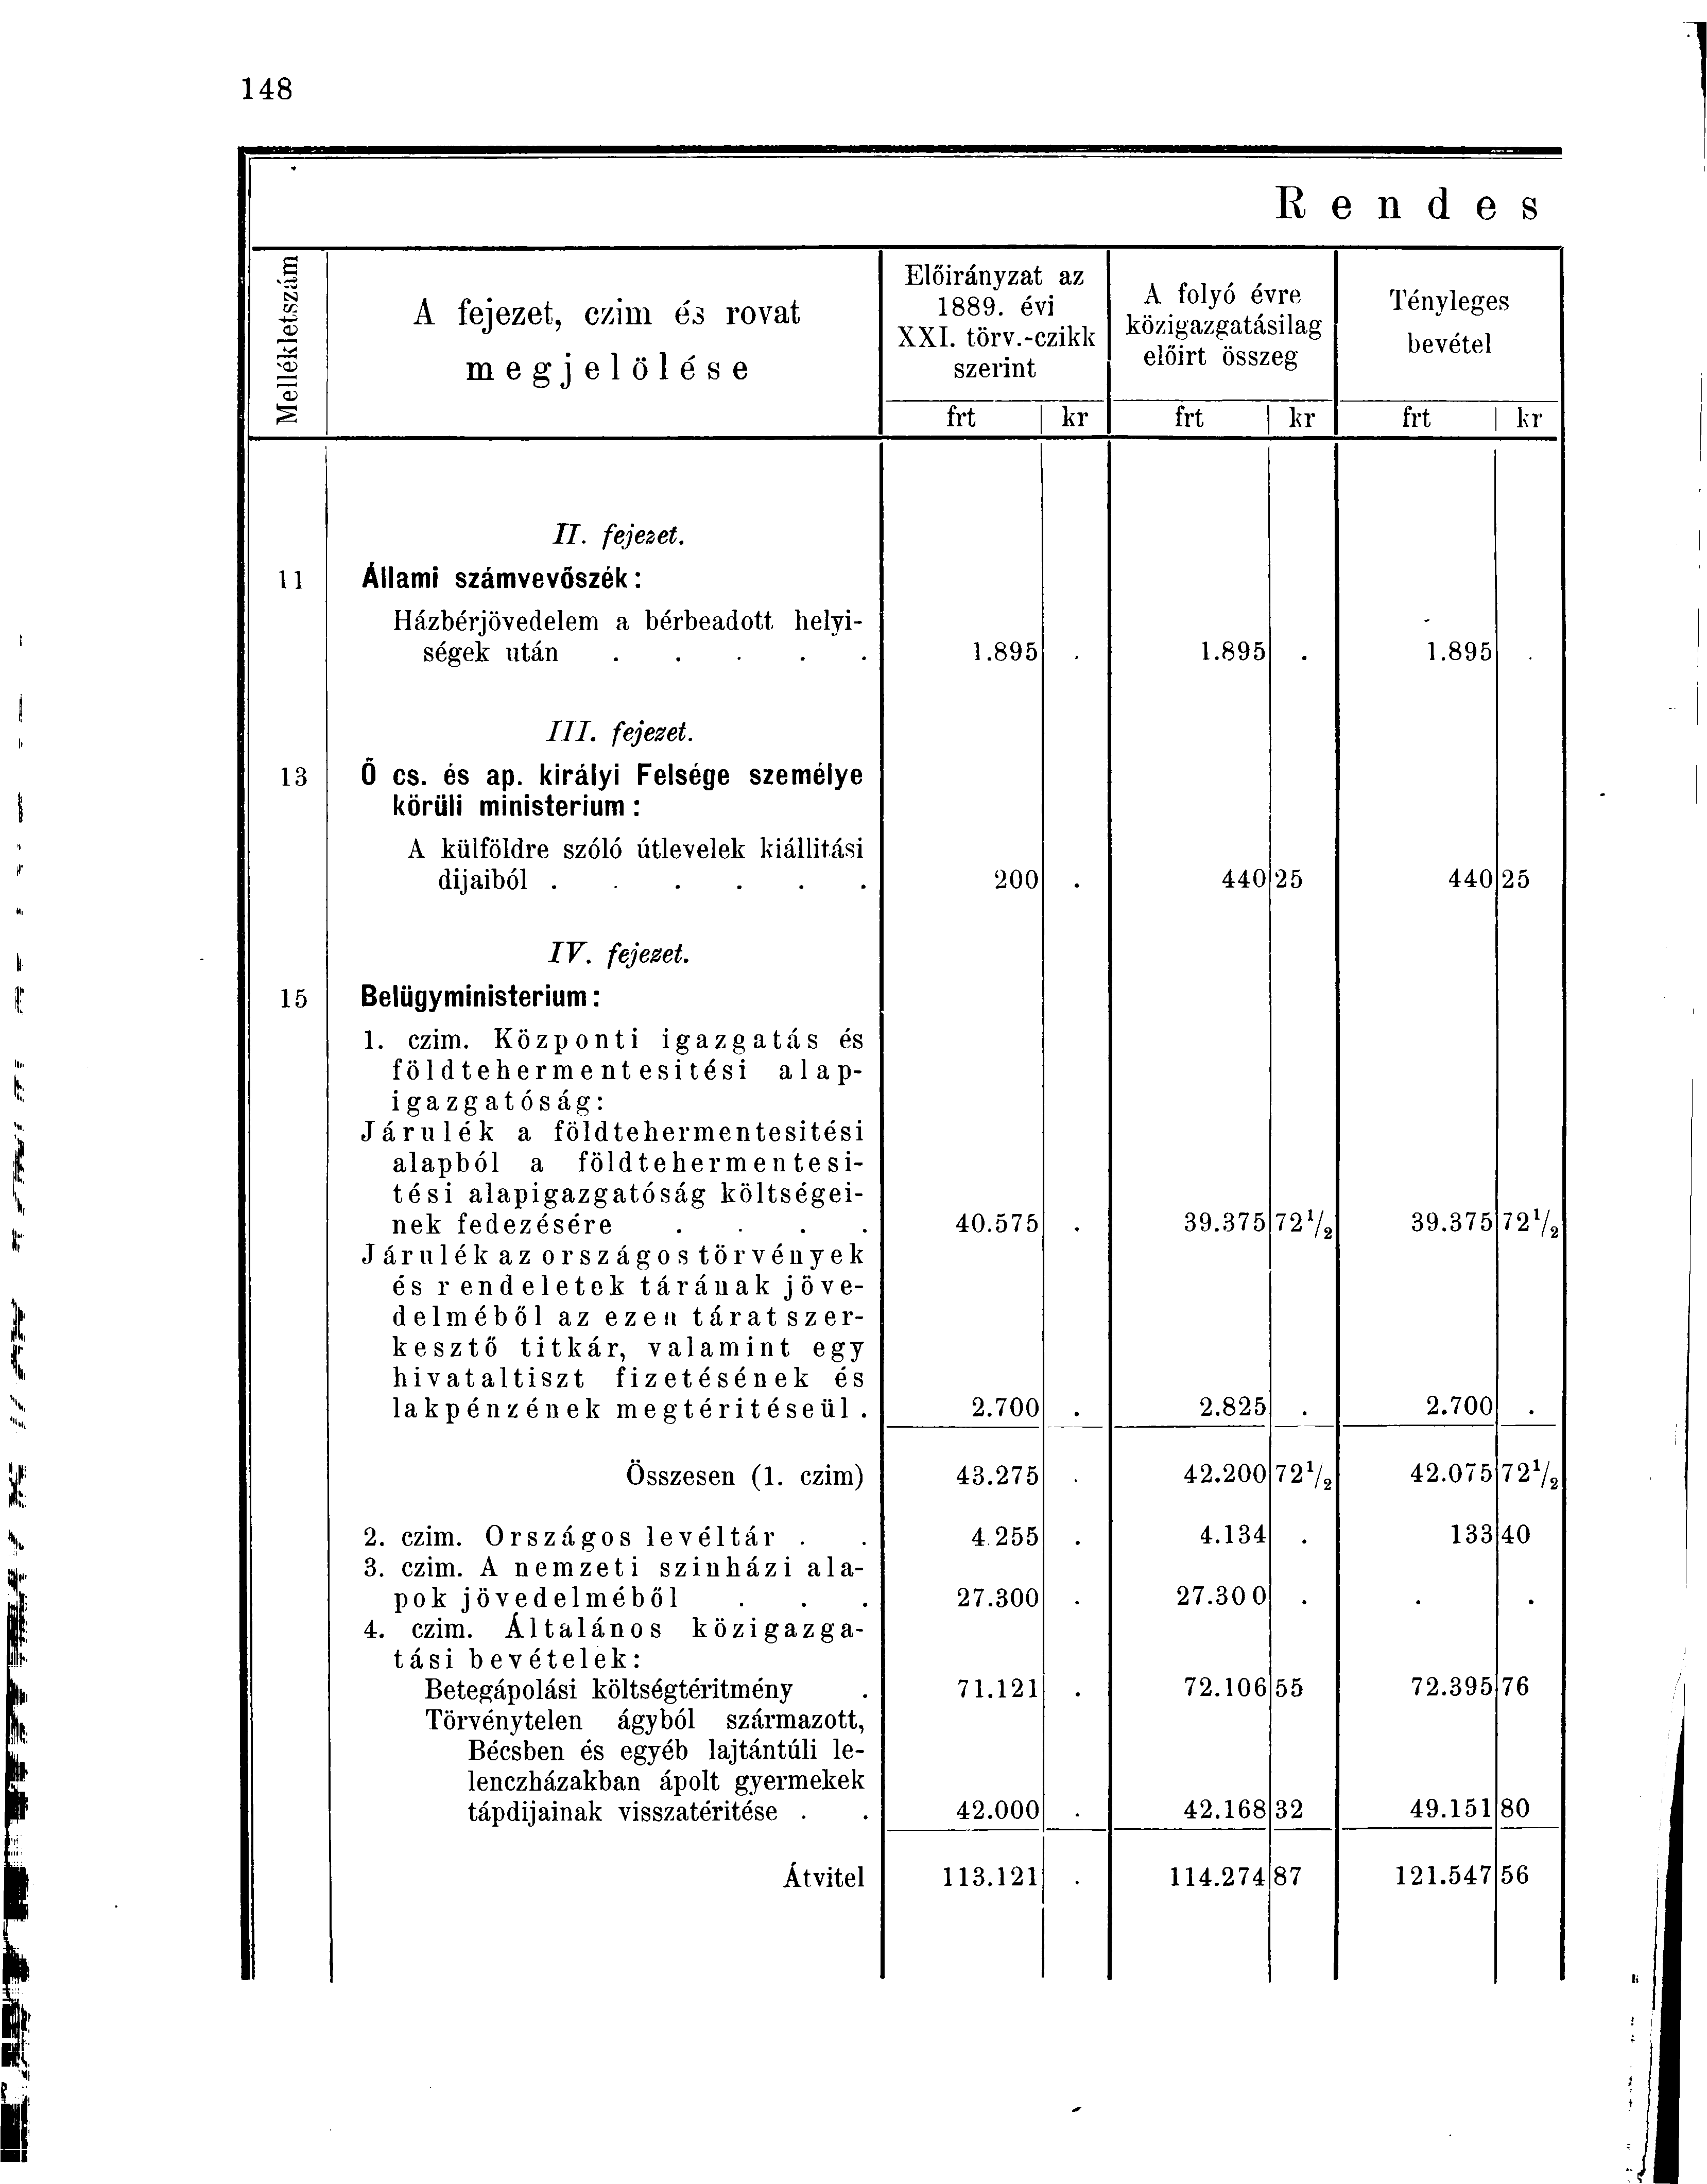 s IS) cc 03 A fejezet, czim és rovat megjelölése Előirányzat az 1889. évi XXI. törv.